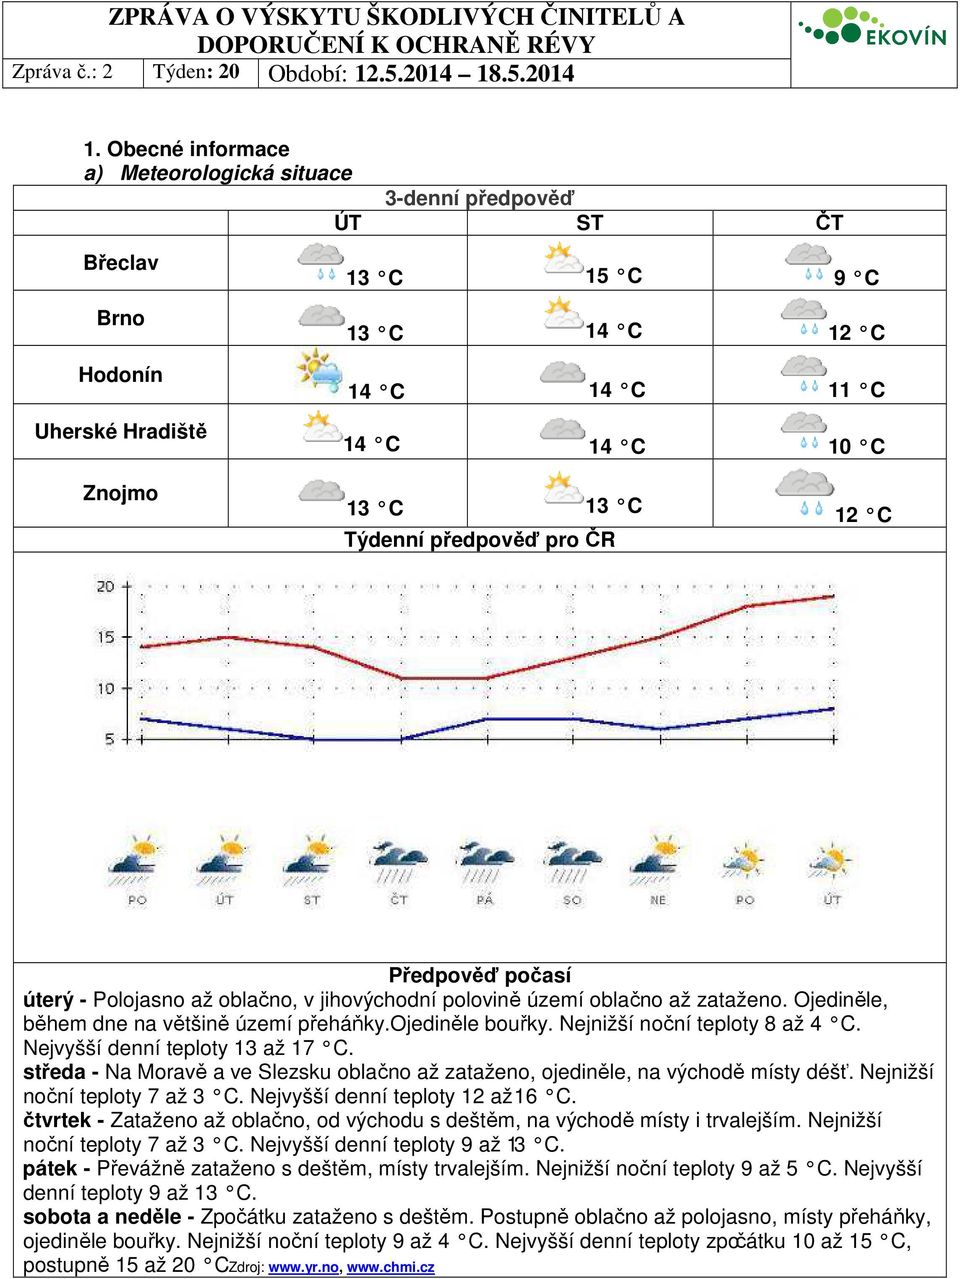 Nejnižší noční teploty 8 až 4 C. Nejvyšší denní teploty 13 až 17 C. středa - Na Moravě a ve Slezsku oblačno až zataženo, ojediněle, na východě místy déšť. Nejnižší noční teploty 7 až 3 C.